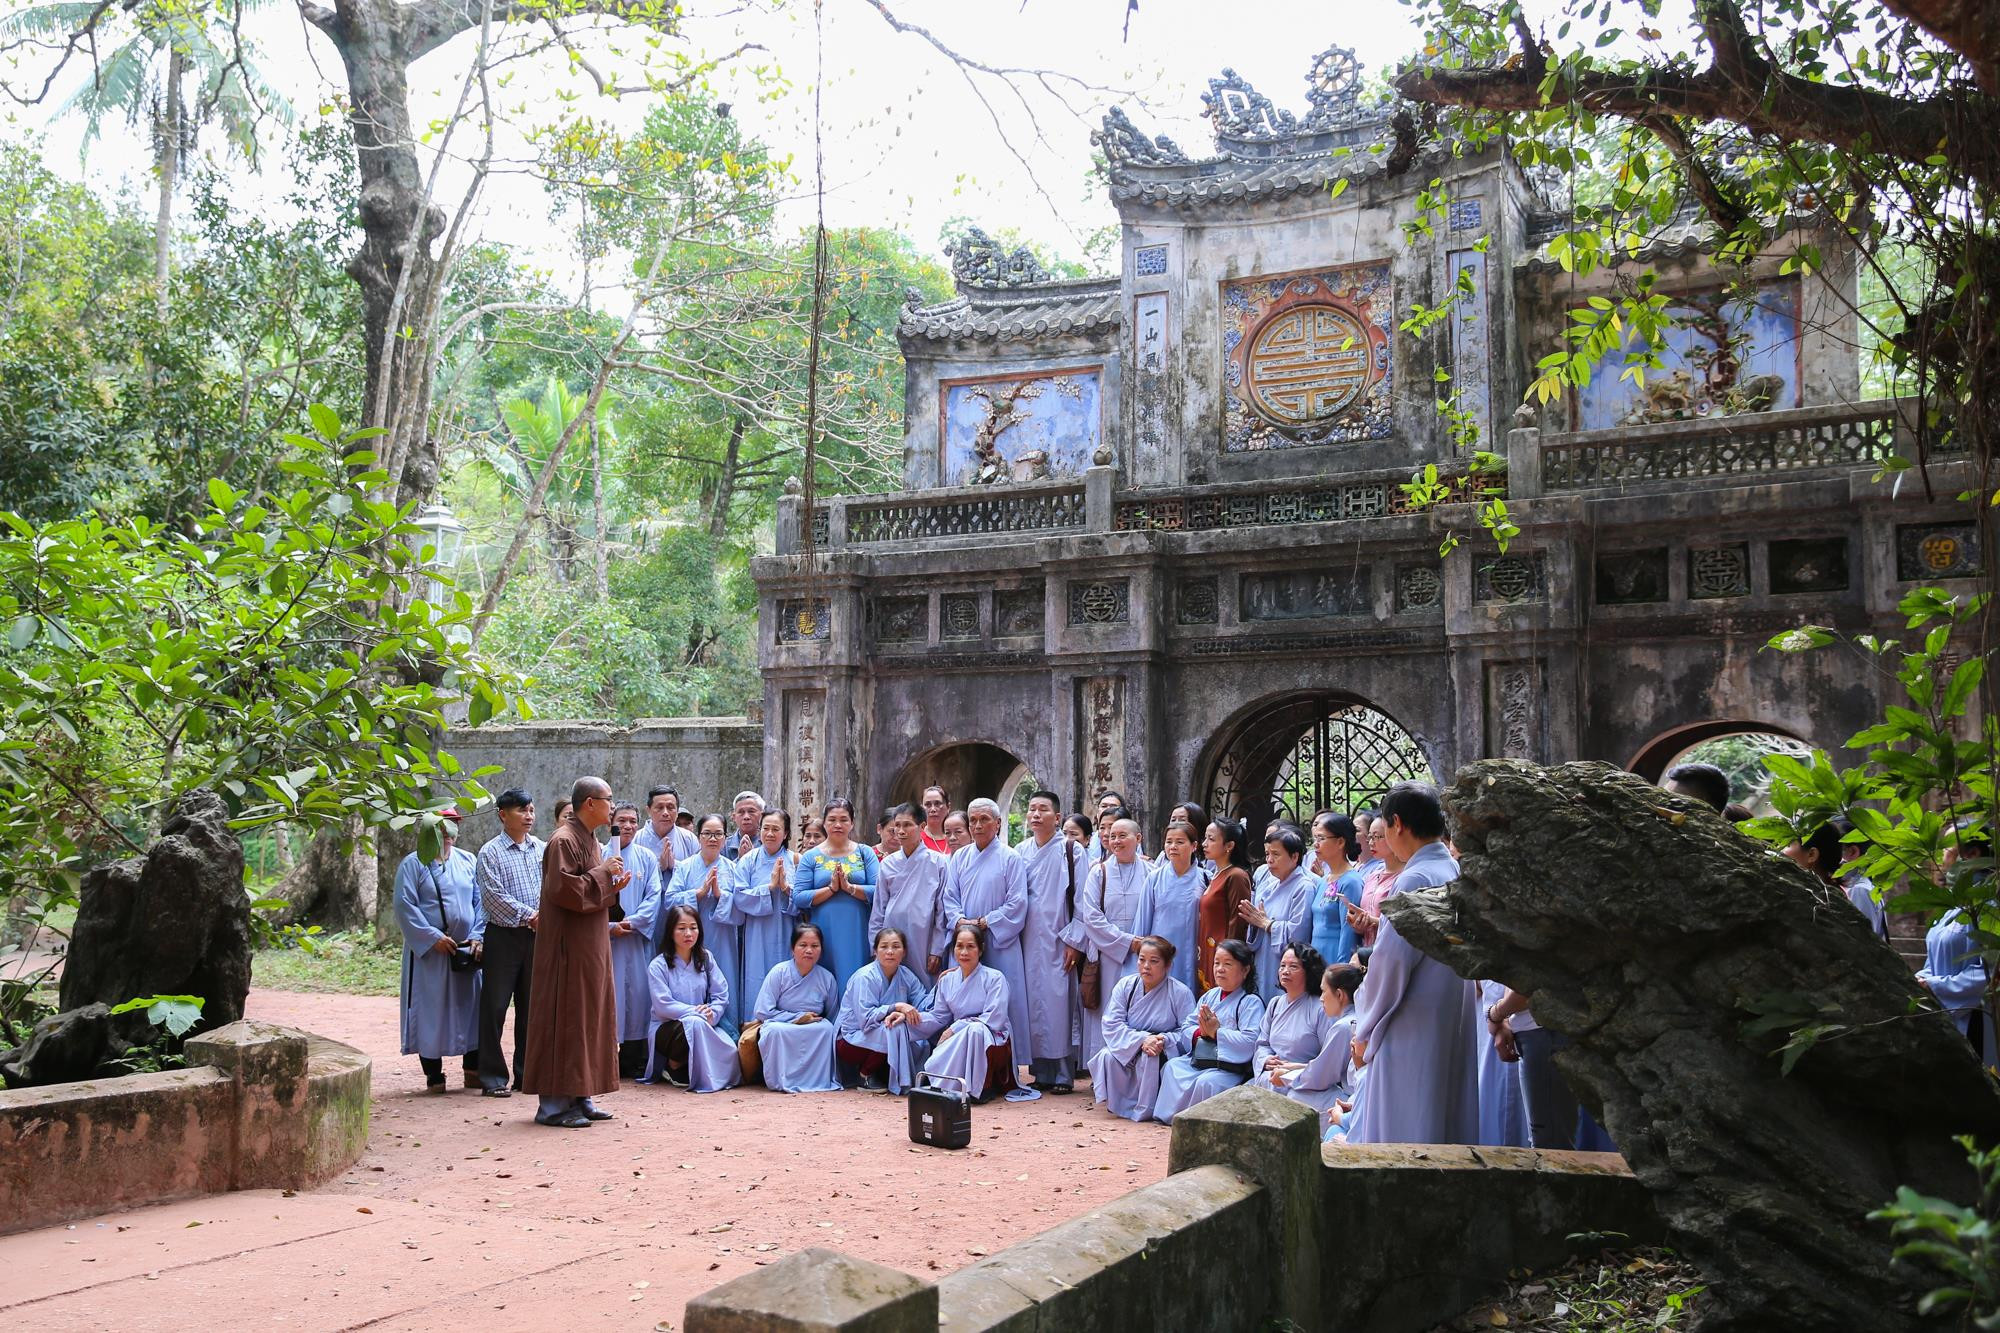 Hơn 100 phật tử đã hành hương từ TP Vinh và các địa bàn lân cận để được về chùa Từ Hiếu mong được đảnh lễ sư thầy Thích Nhất Hạnh, nhà lãnh đạo Phật giáo có ảnh hưởng lớn thứ hai ở phương Tây, chỉ sau Đạt Lai Lạt Ma.  